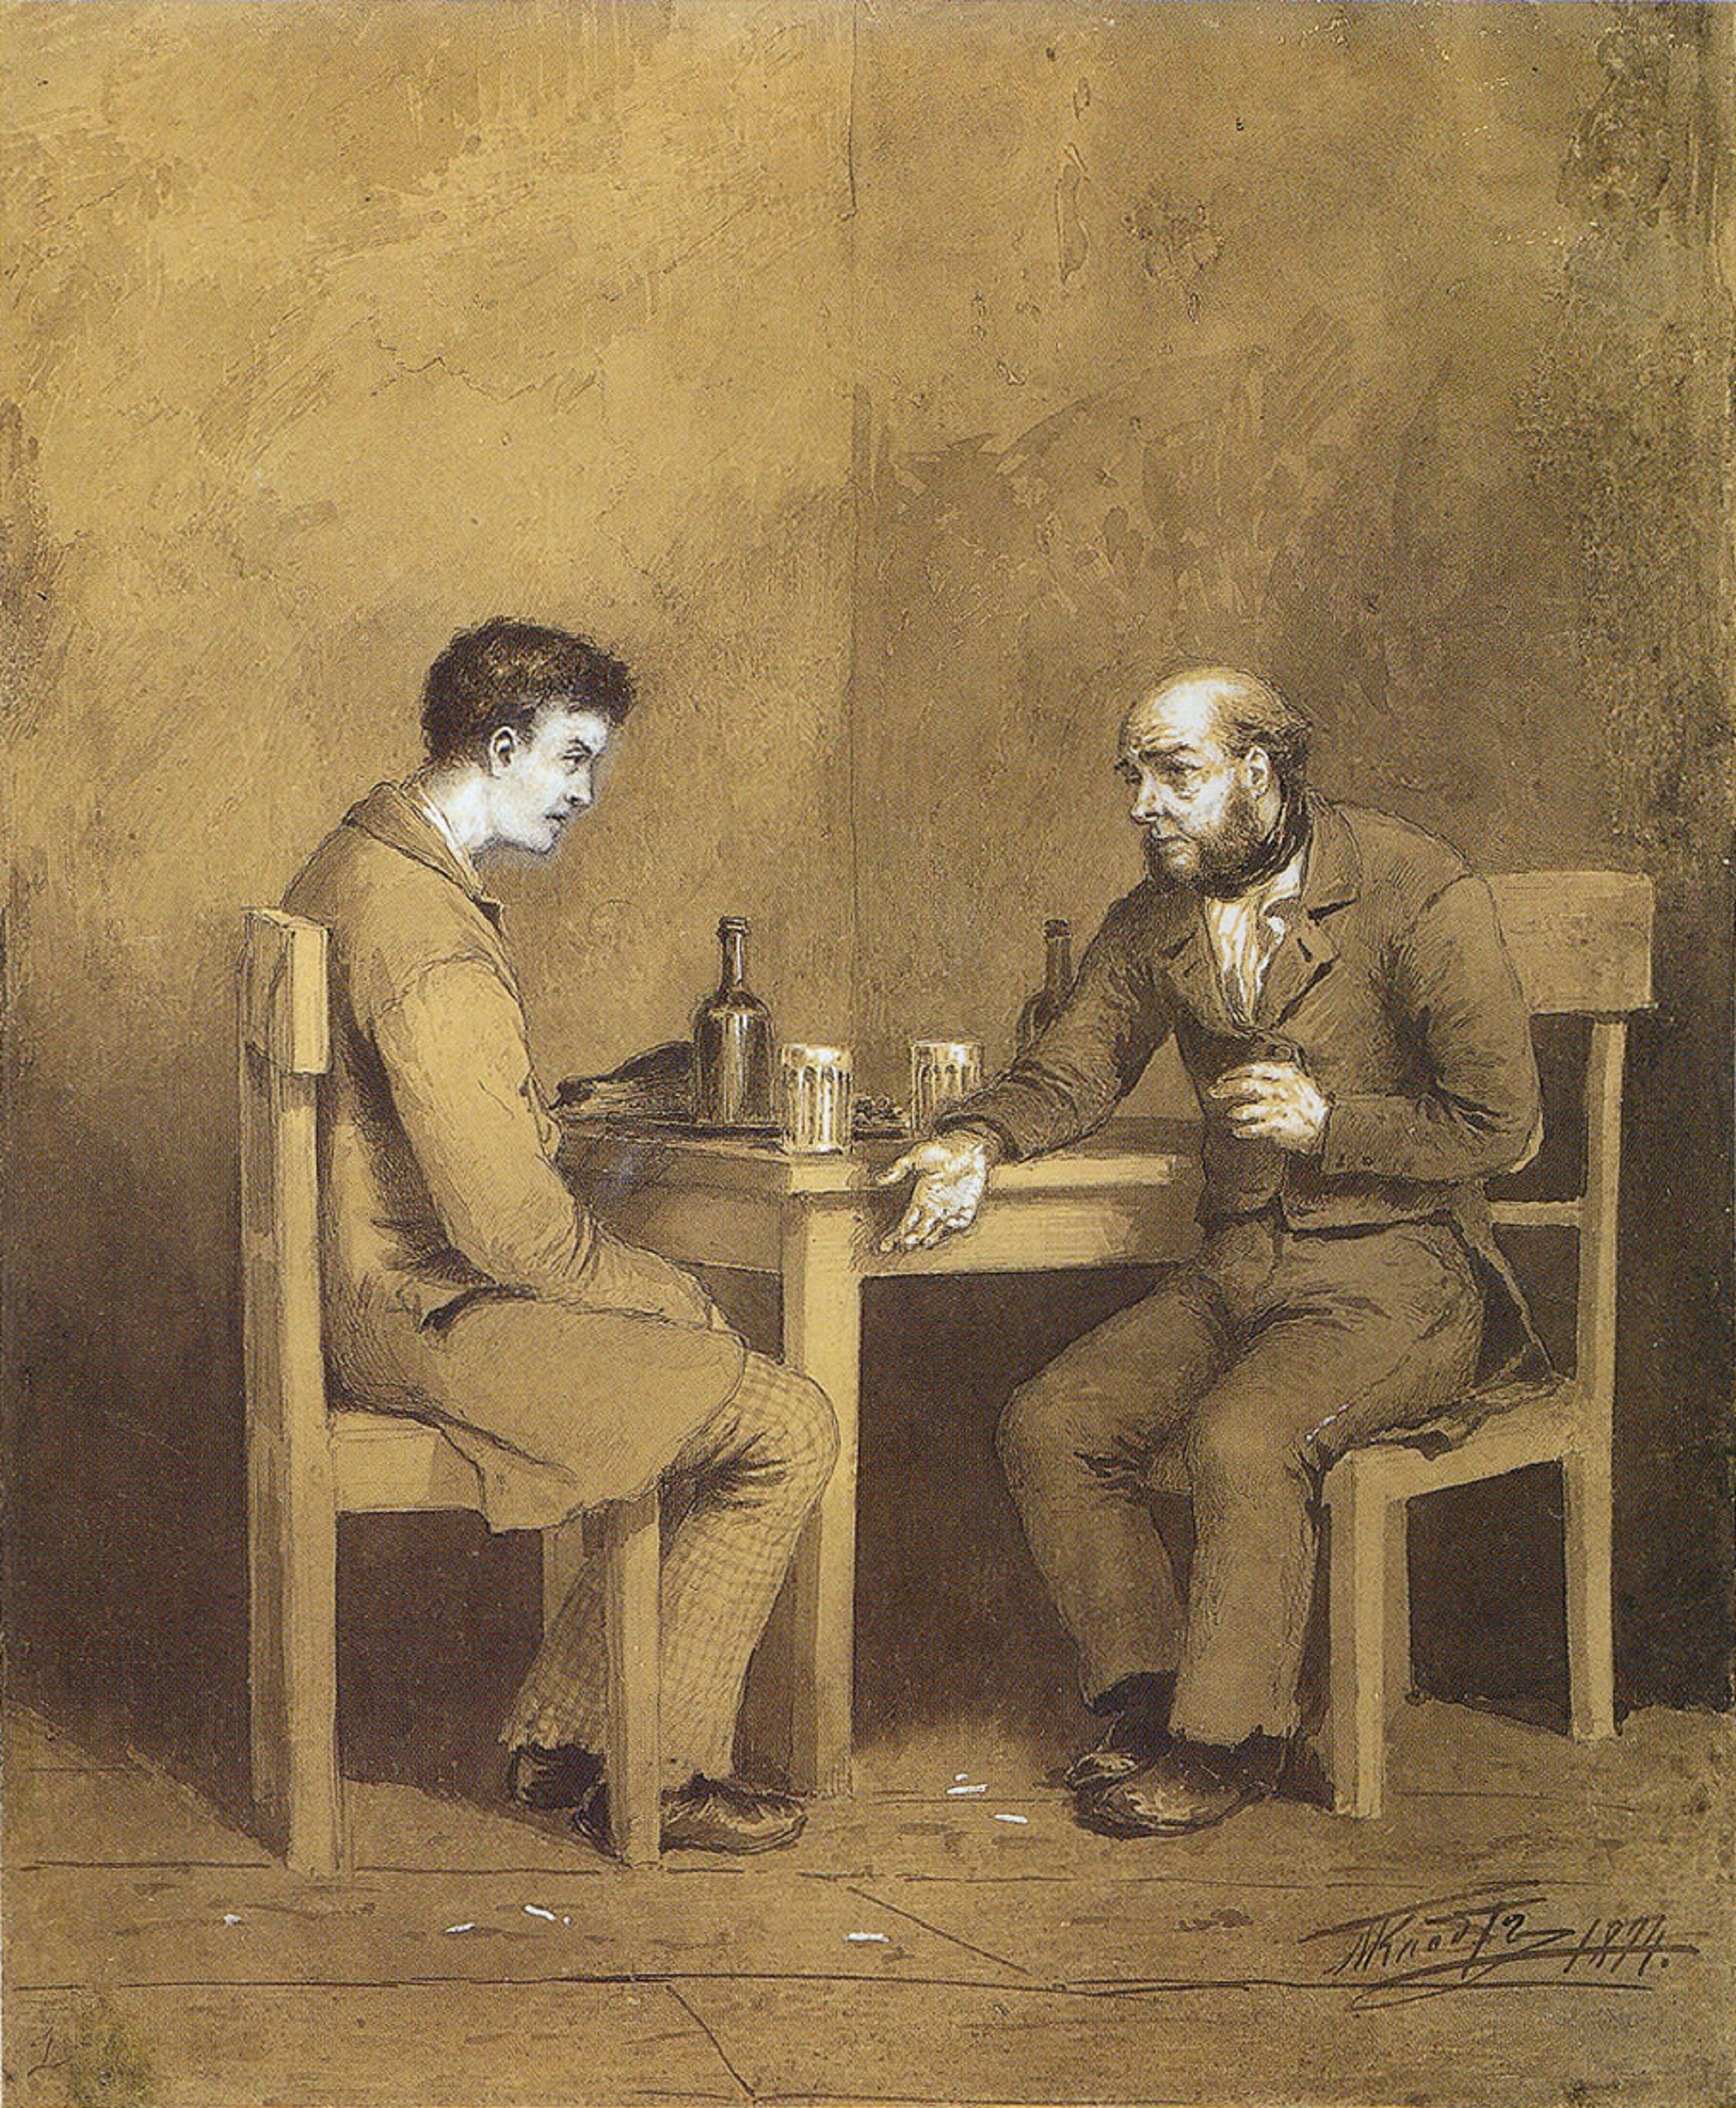 Raskólnikov y Marmeládov, personajes de “Crimen y castigo”, ilustrados por Mijaíl Klodt